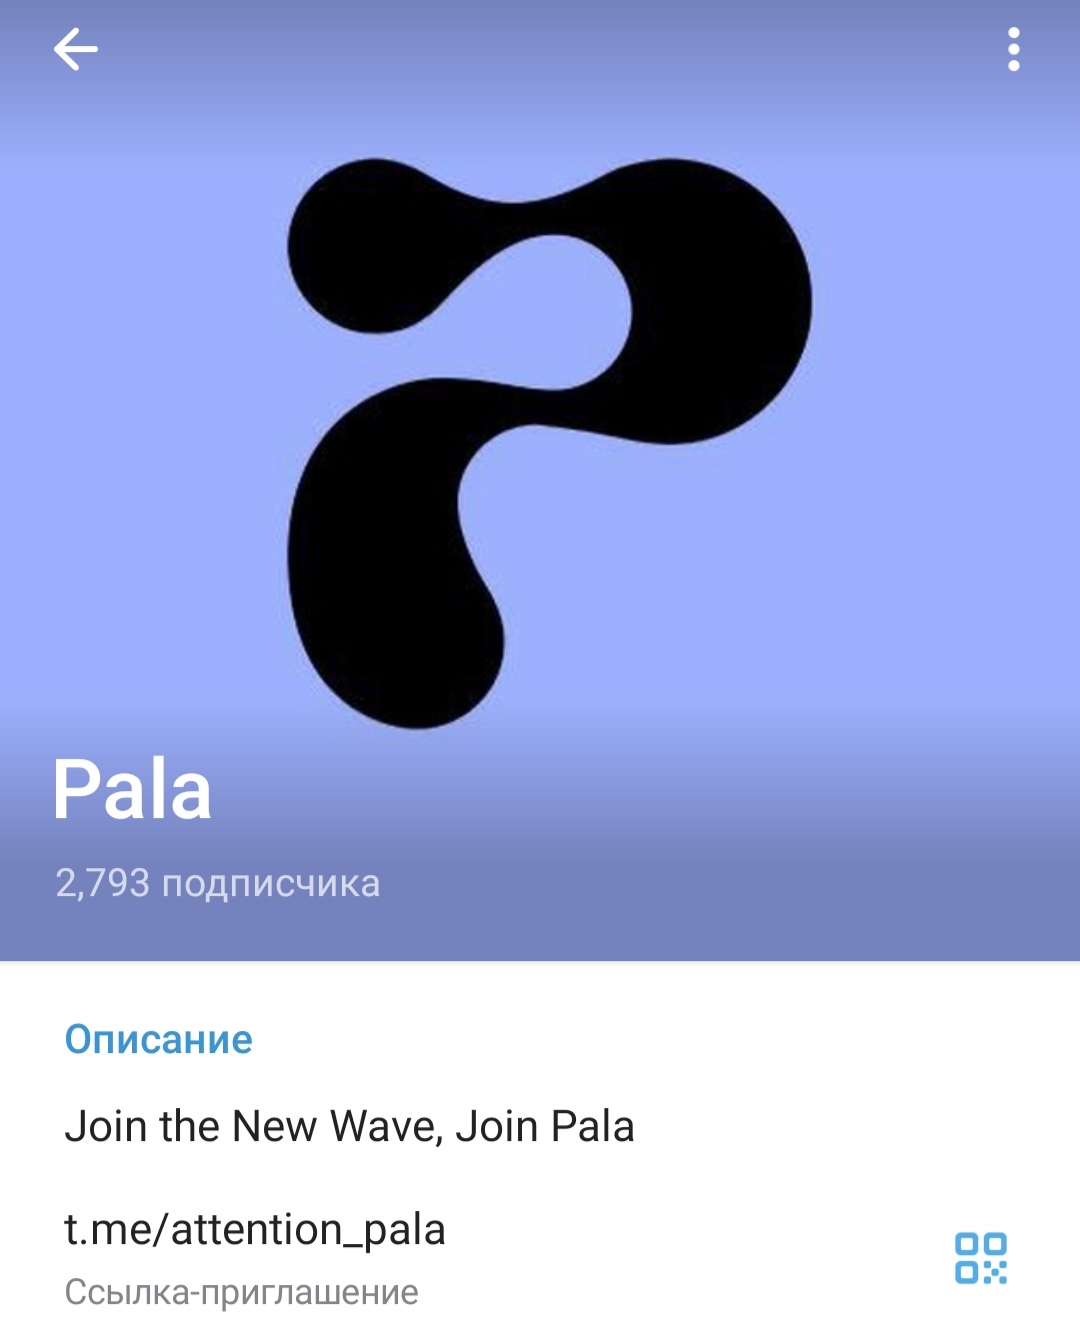 Pala - телеграм